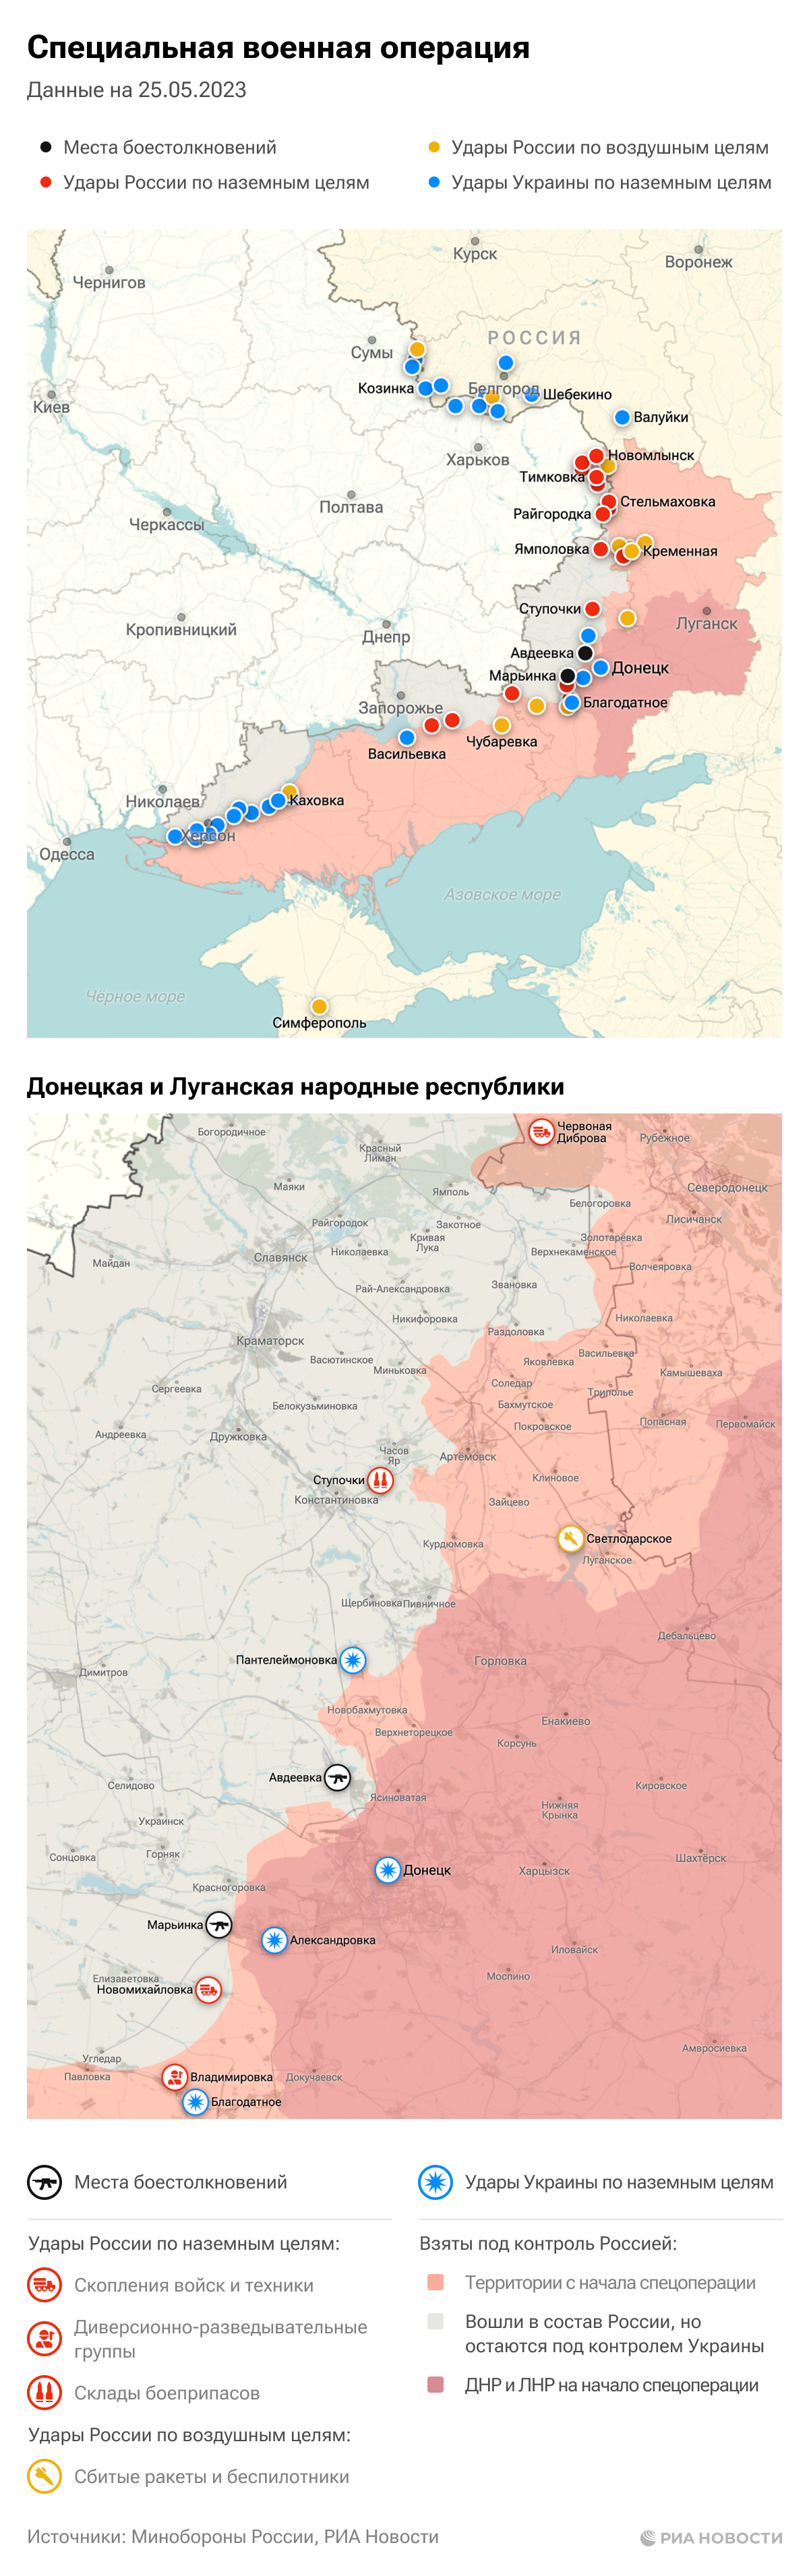 Карта спецоперации Вооруженных сил России на Украине на 25.05.2023